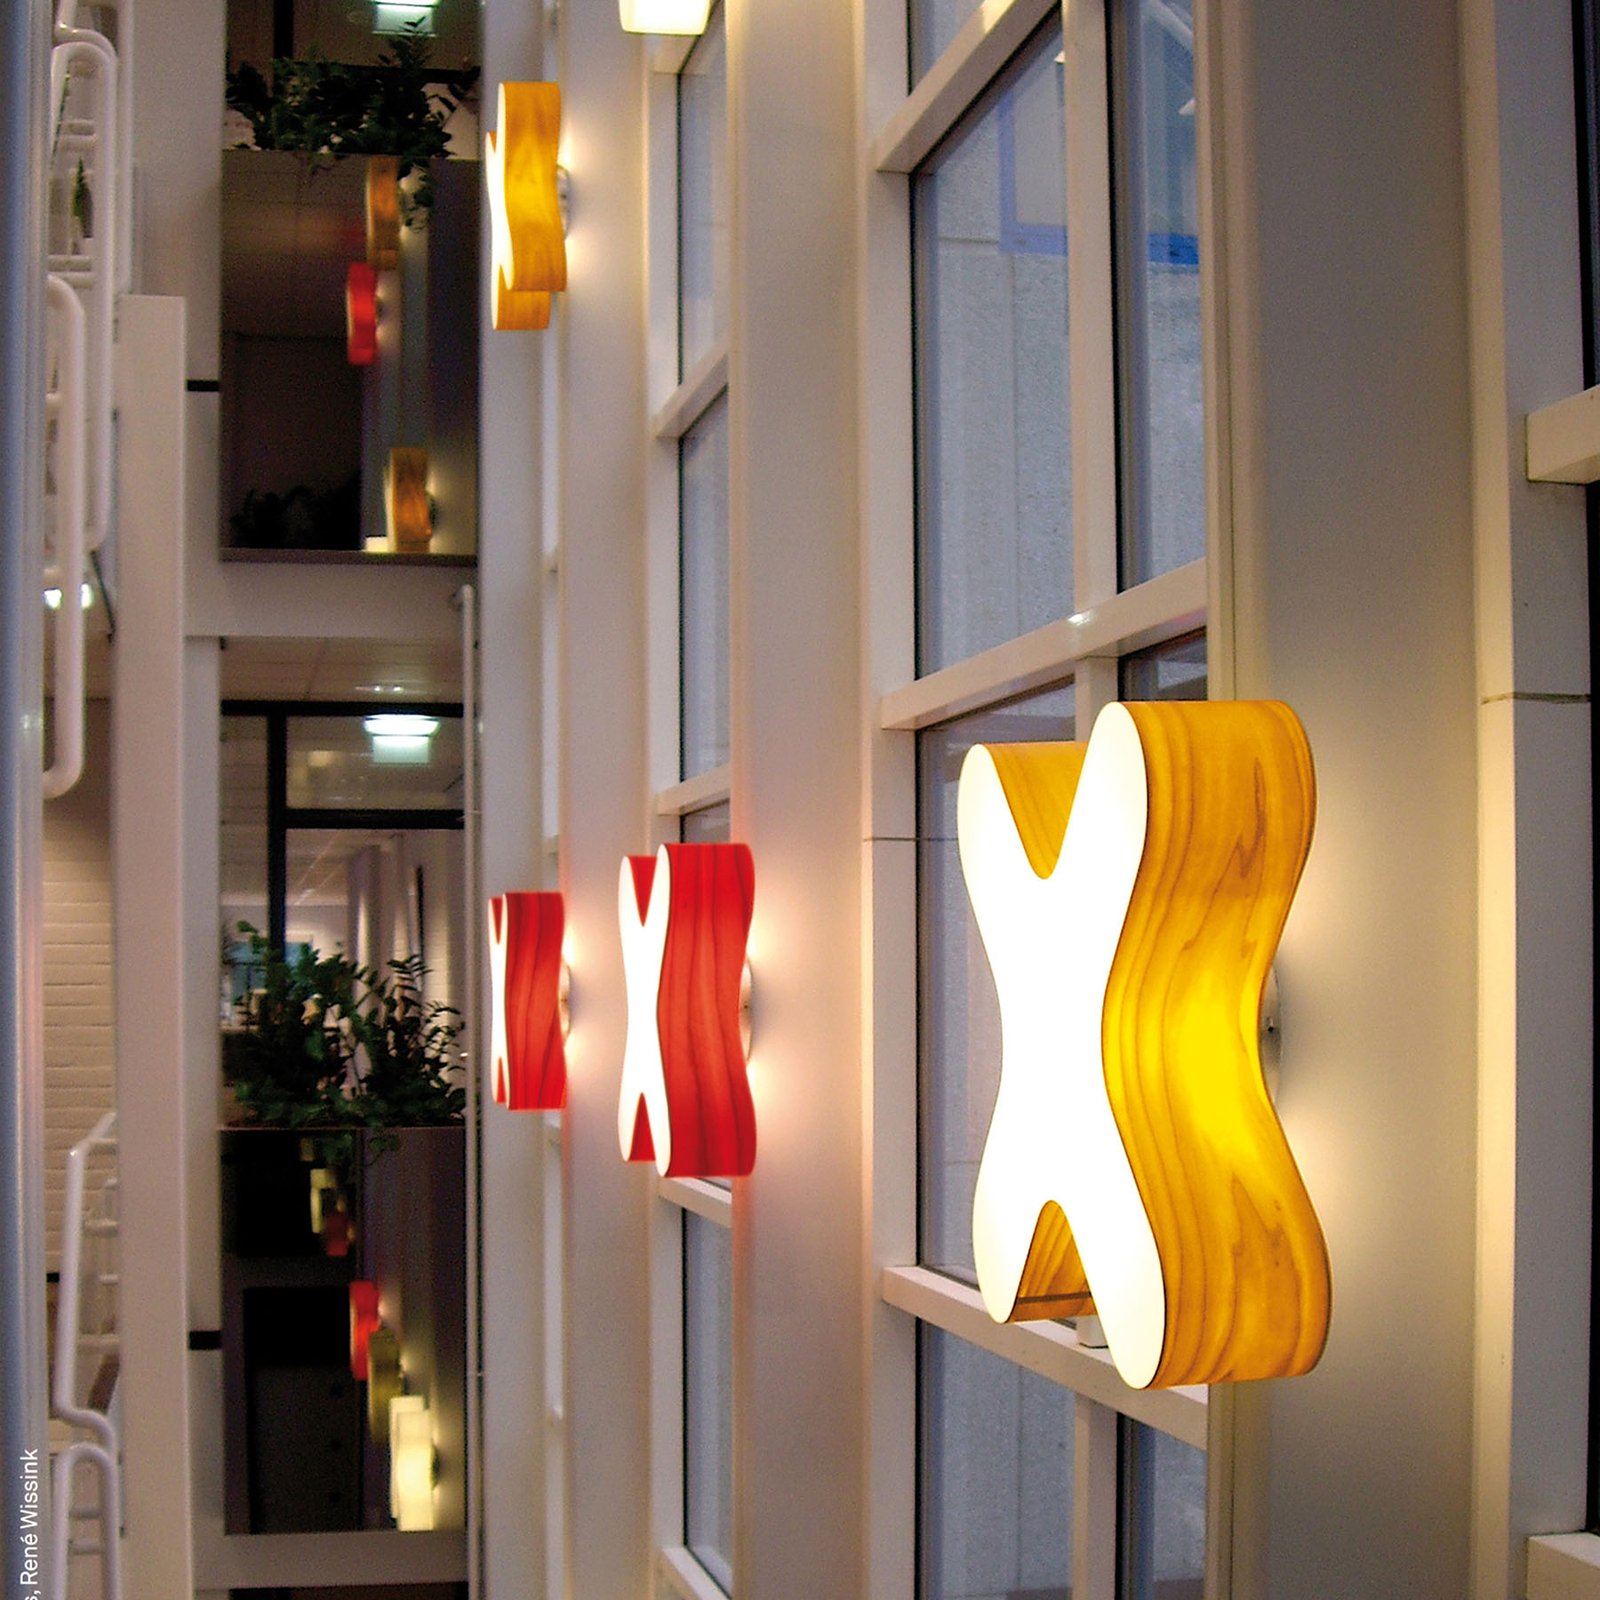 LZF X-Club LED nástěnné světlo 0-10V stmívač žlutá